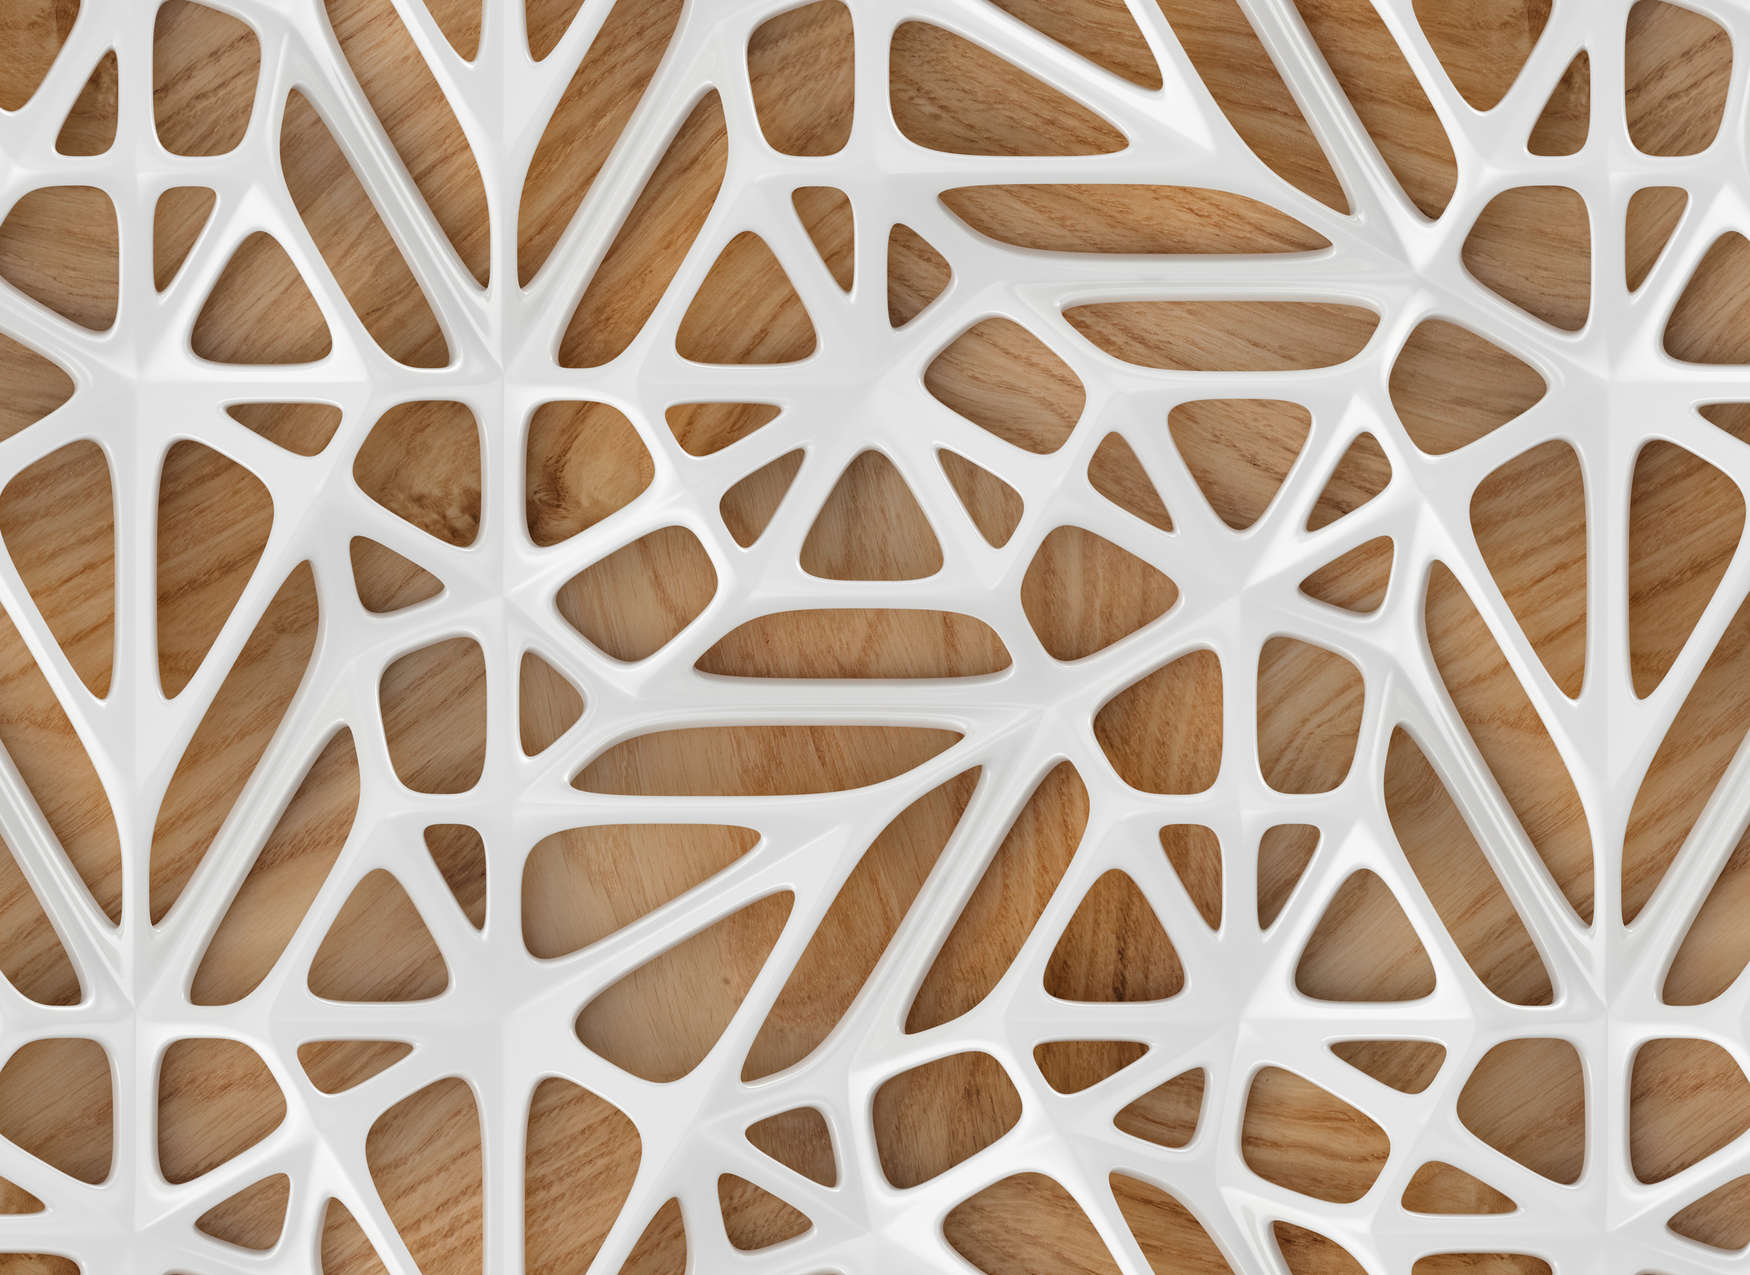             Hout effect behang modern 3D design - wit, bruin
        